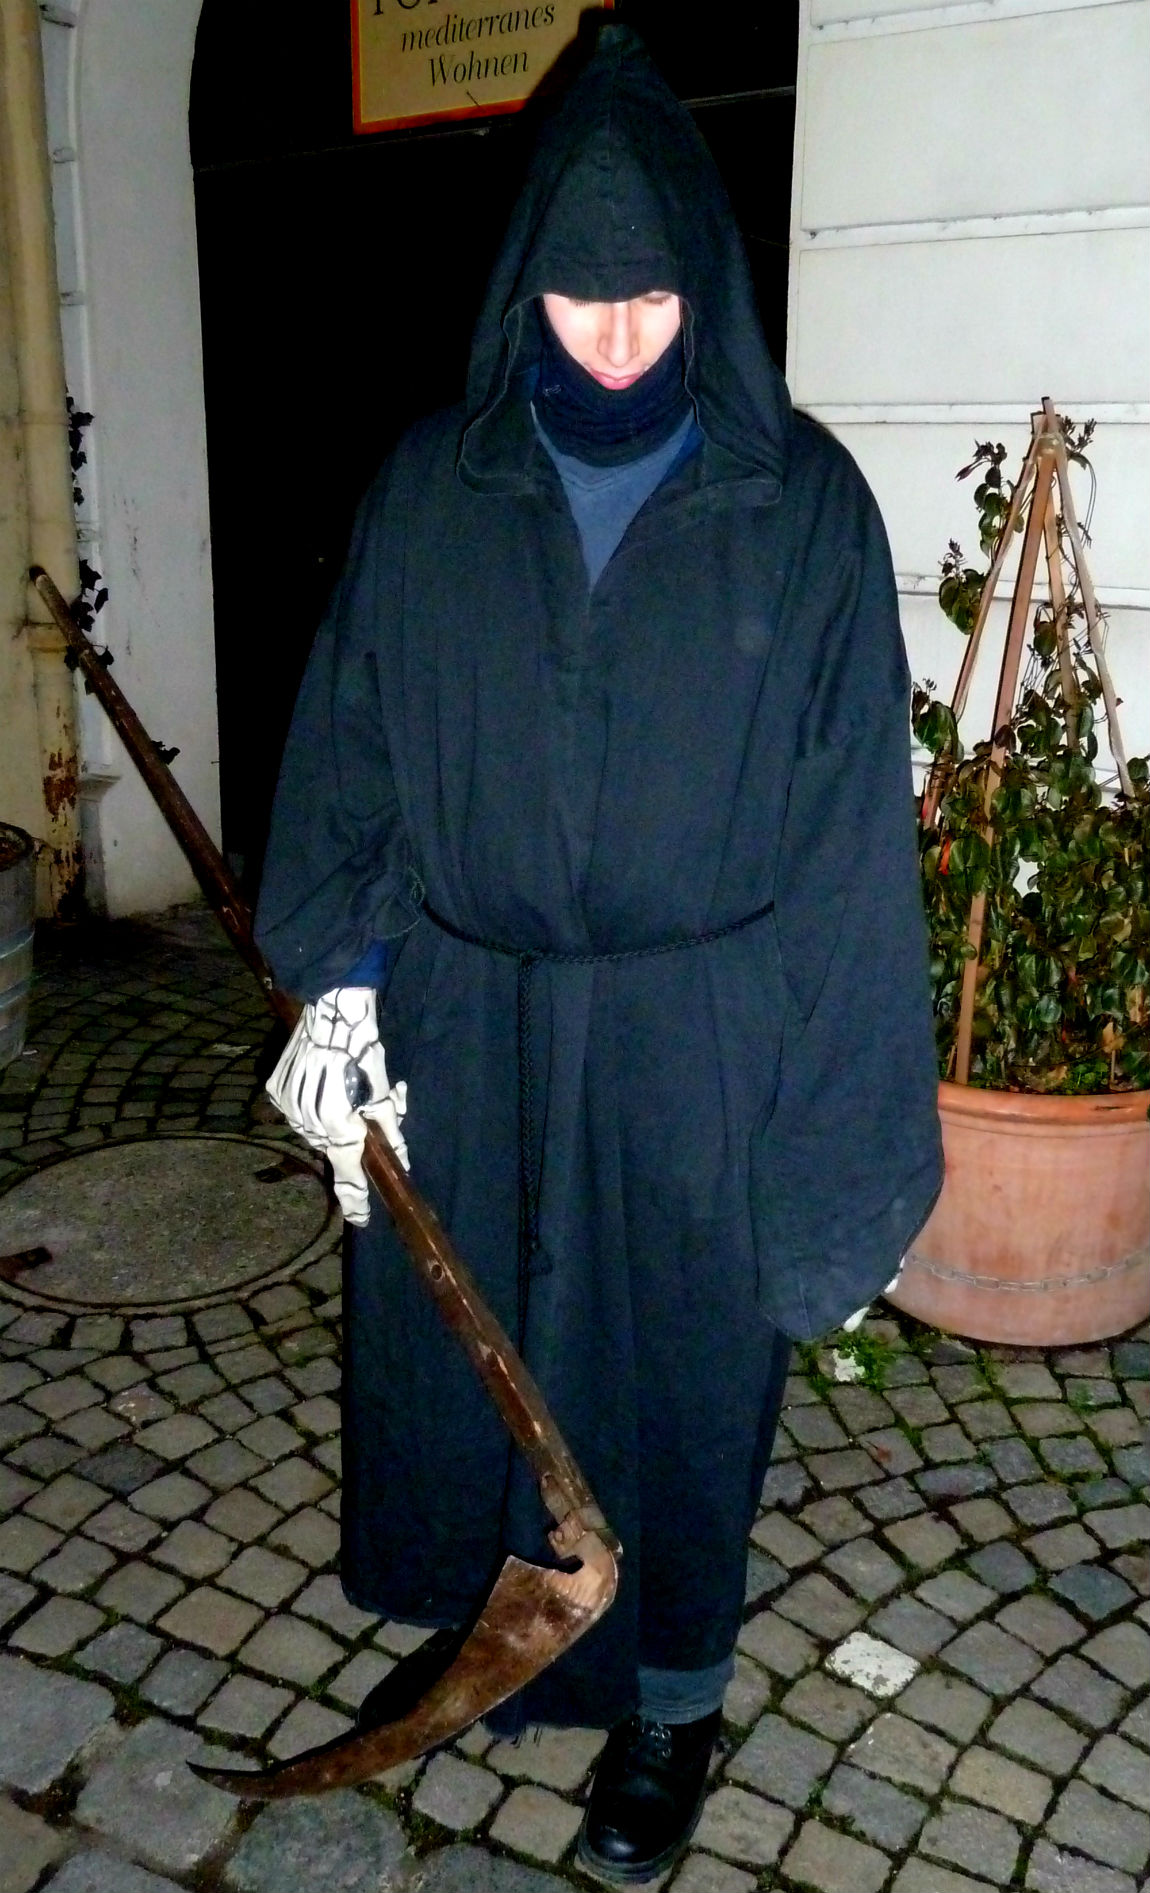 Meeting the Grim Reaper in Esslingen